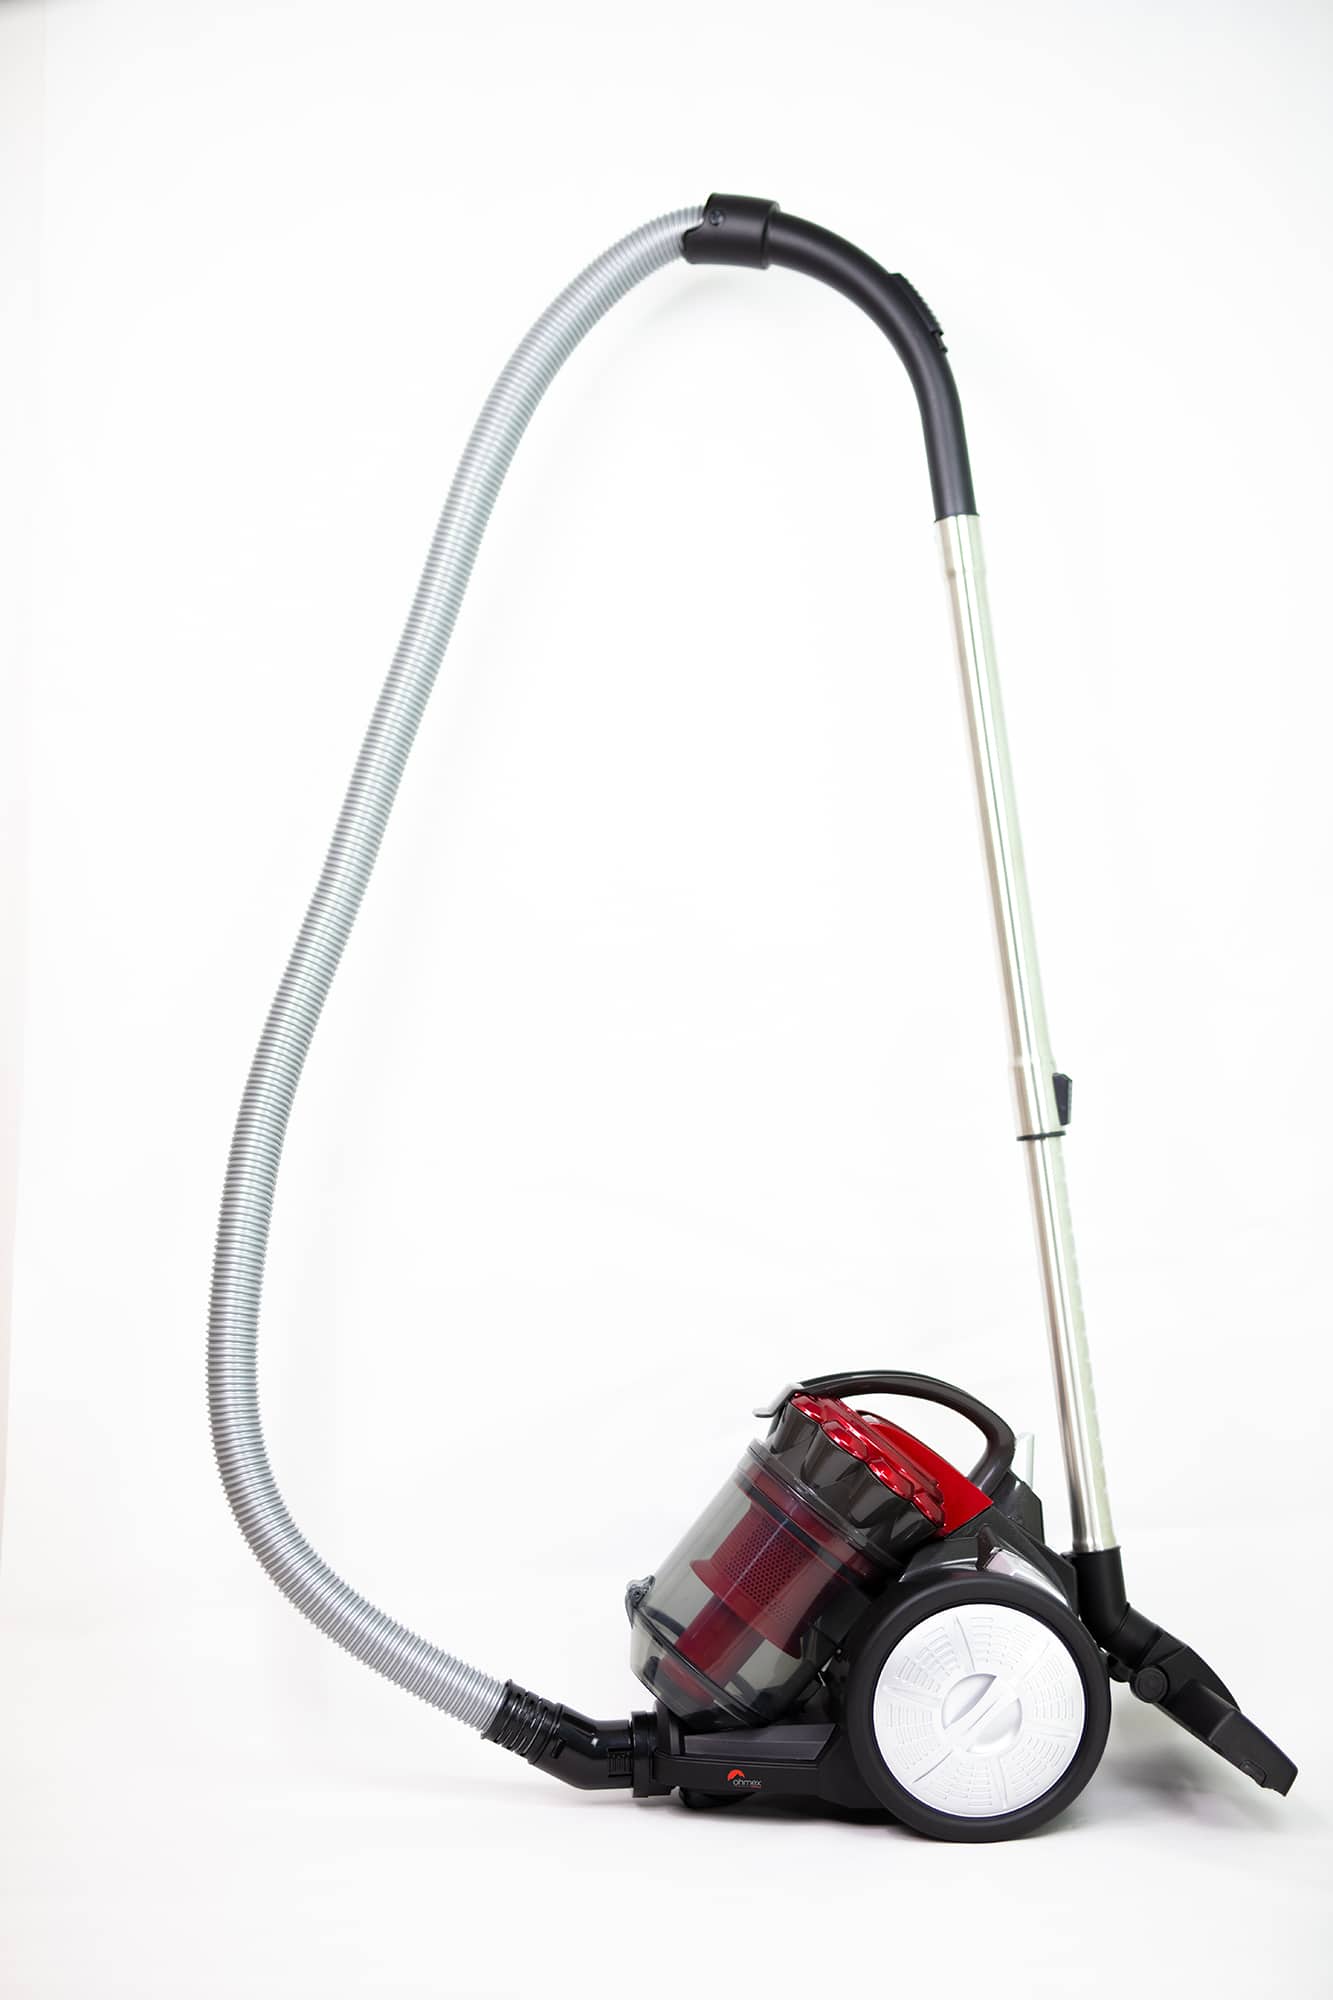 Multi-Cyclonic vacuum cleaner